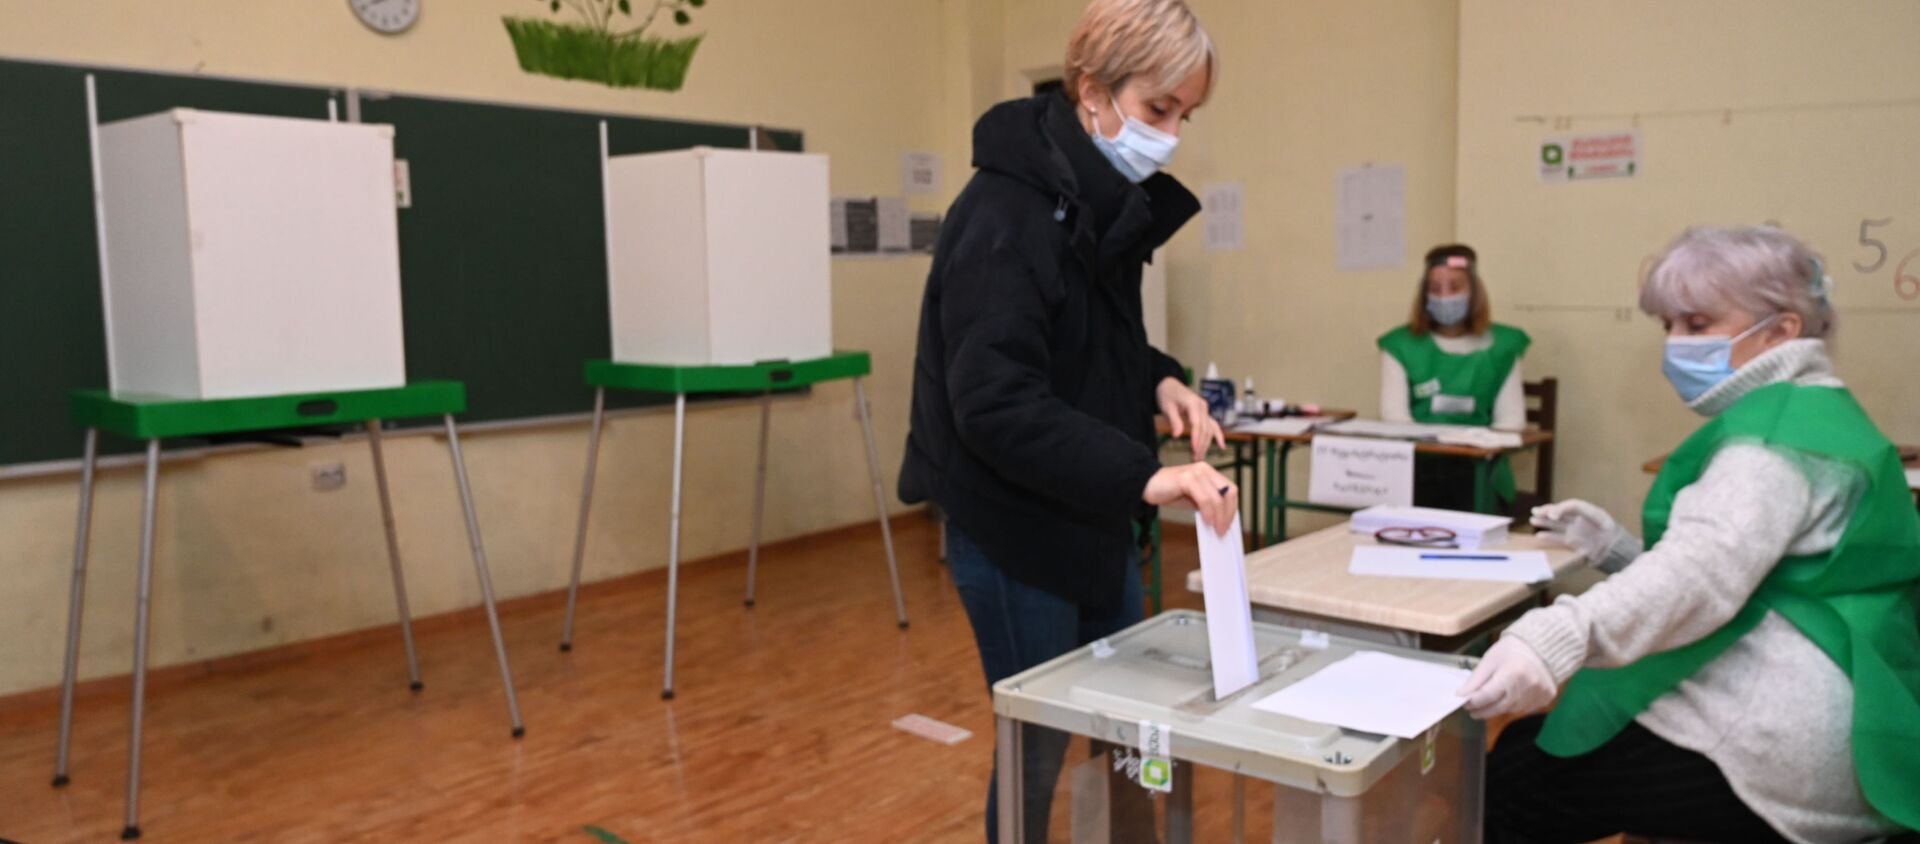 Парламентские выборы в Грузии - второй тур. 21 ноября 2020 года - Sputnik Грузия, 1920, 18.01.2021